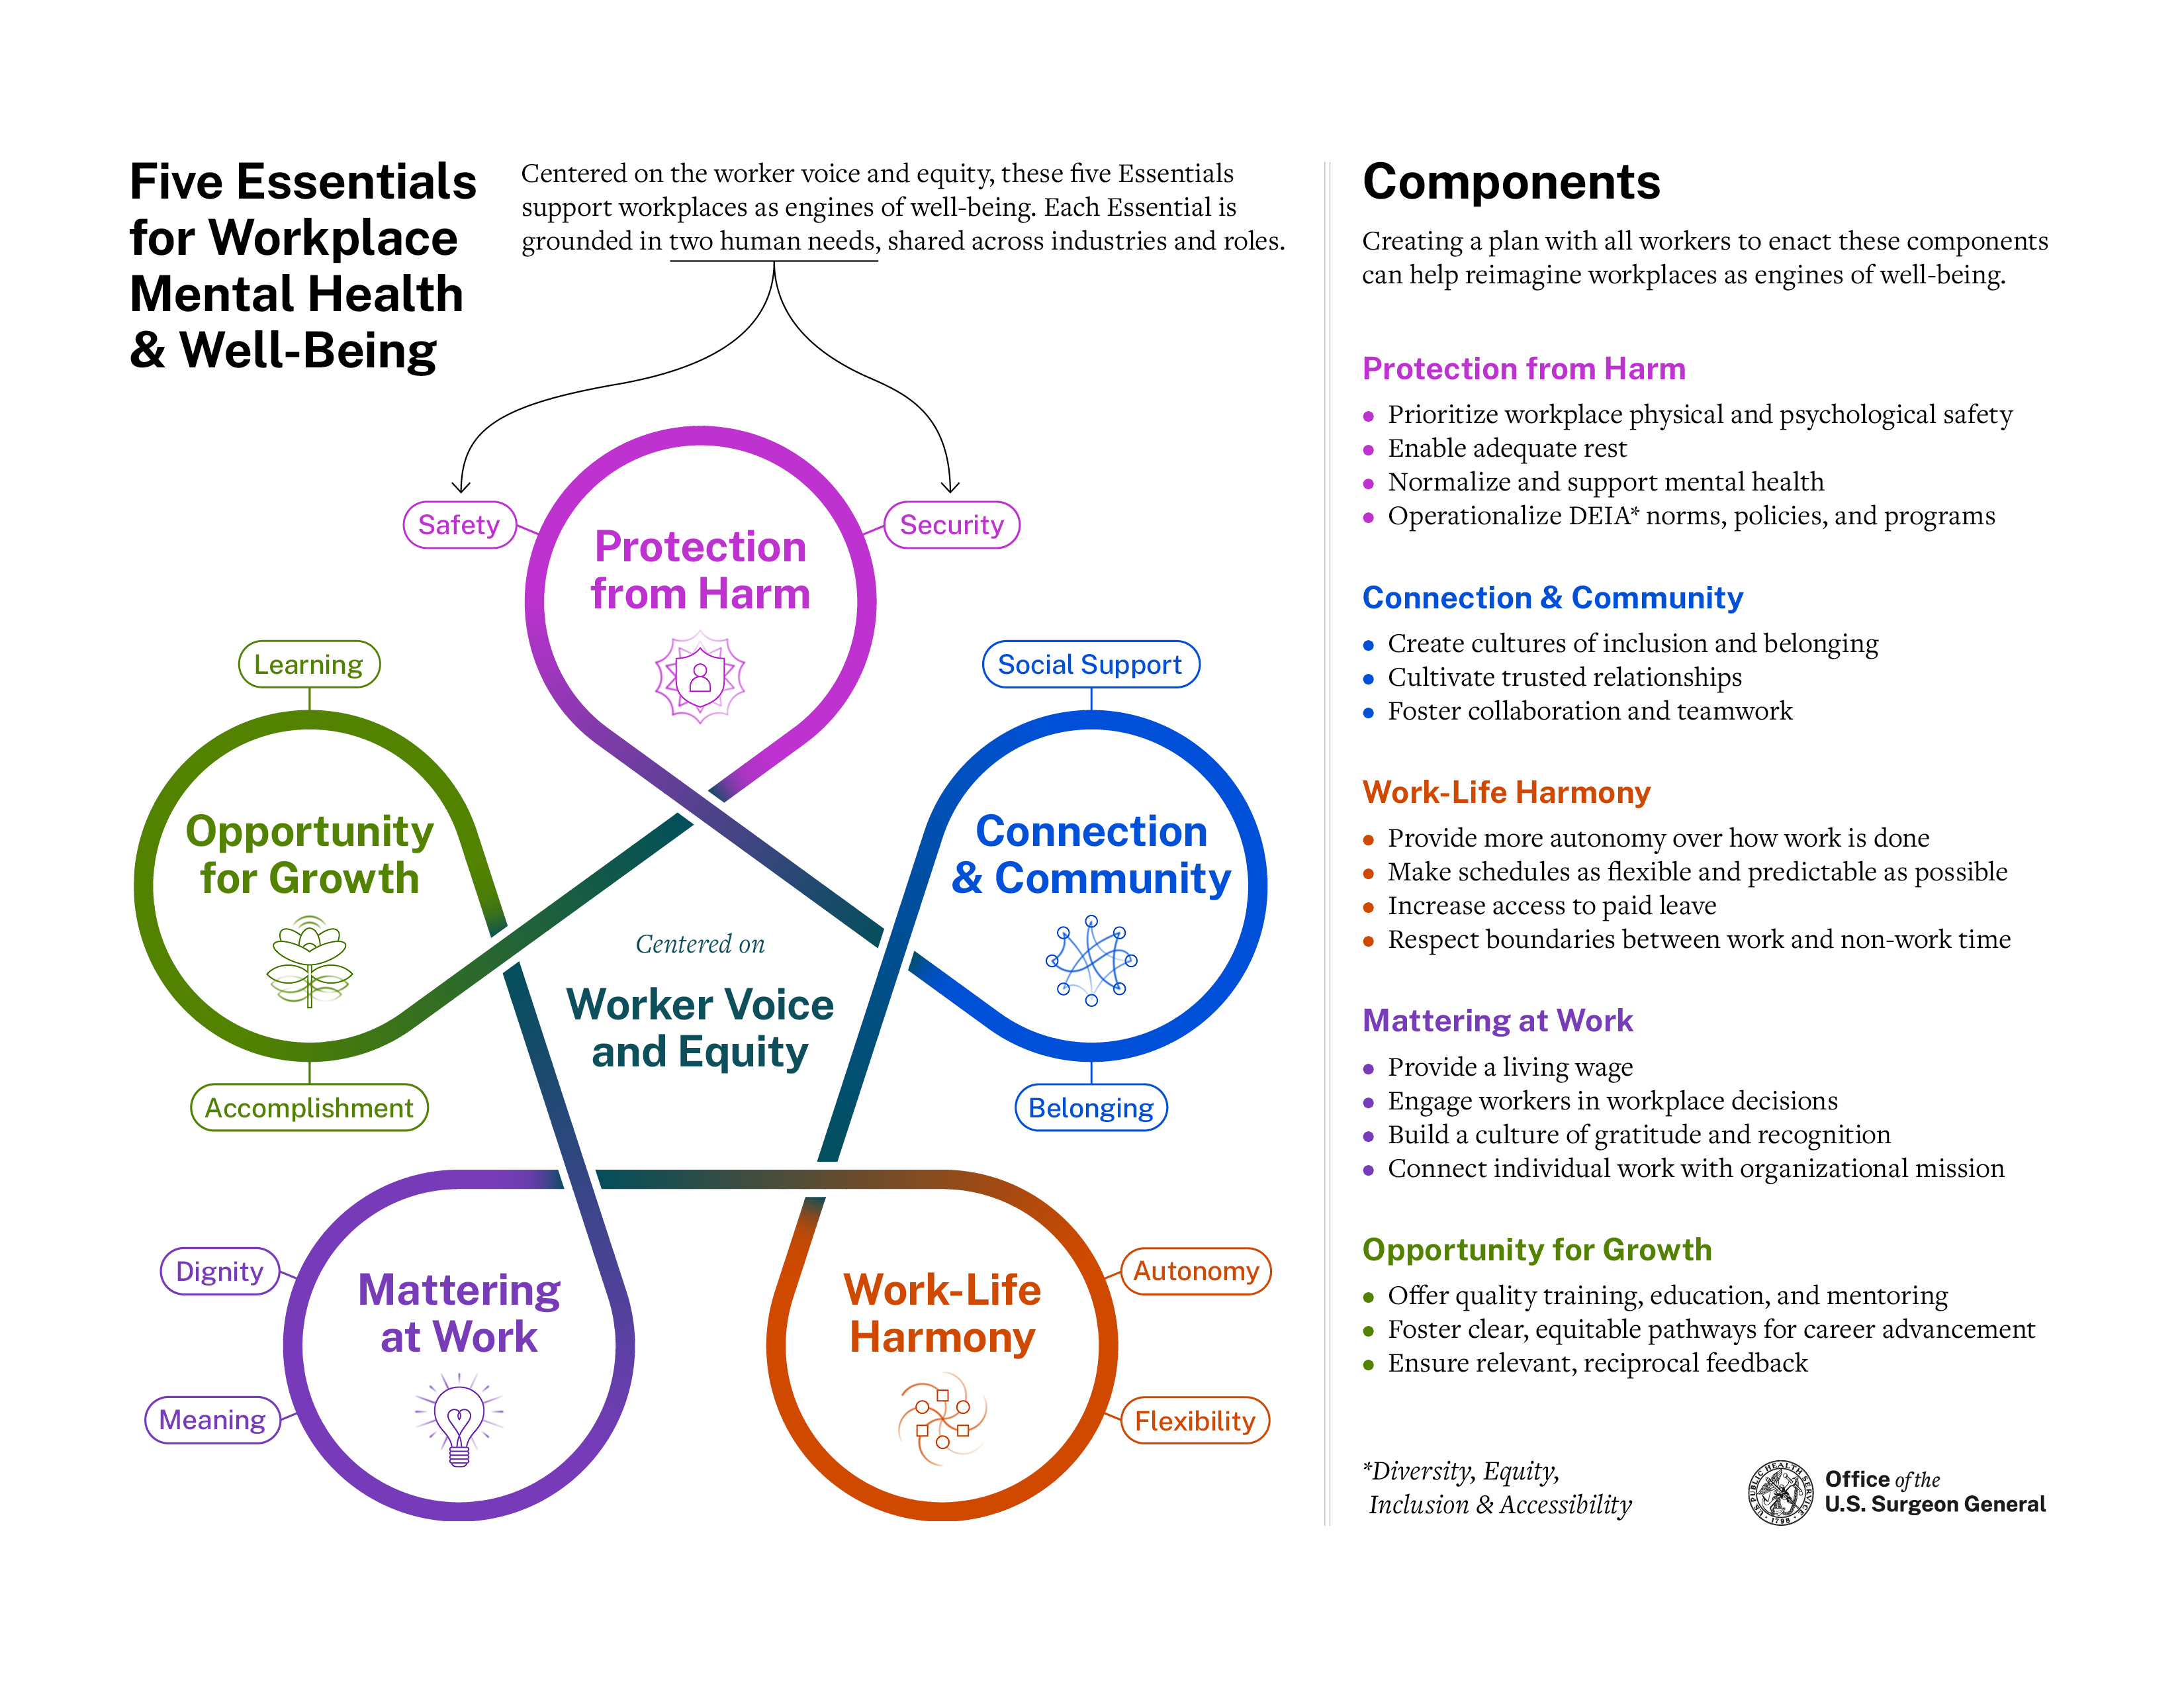 Gráfico de Workplace Framework publicado por el Cirujano General para ayudar a la salud mental en el lugar de trabajo